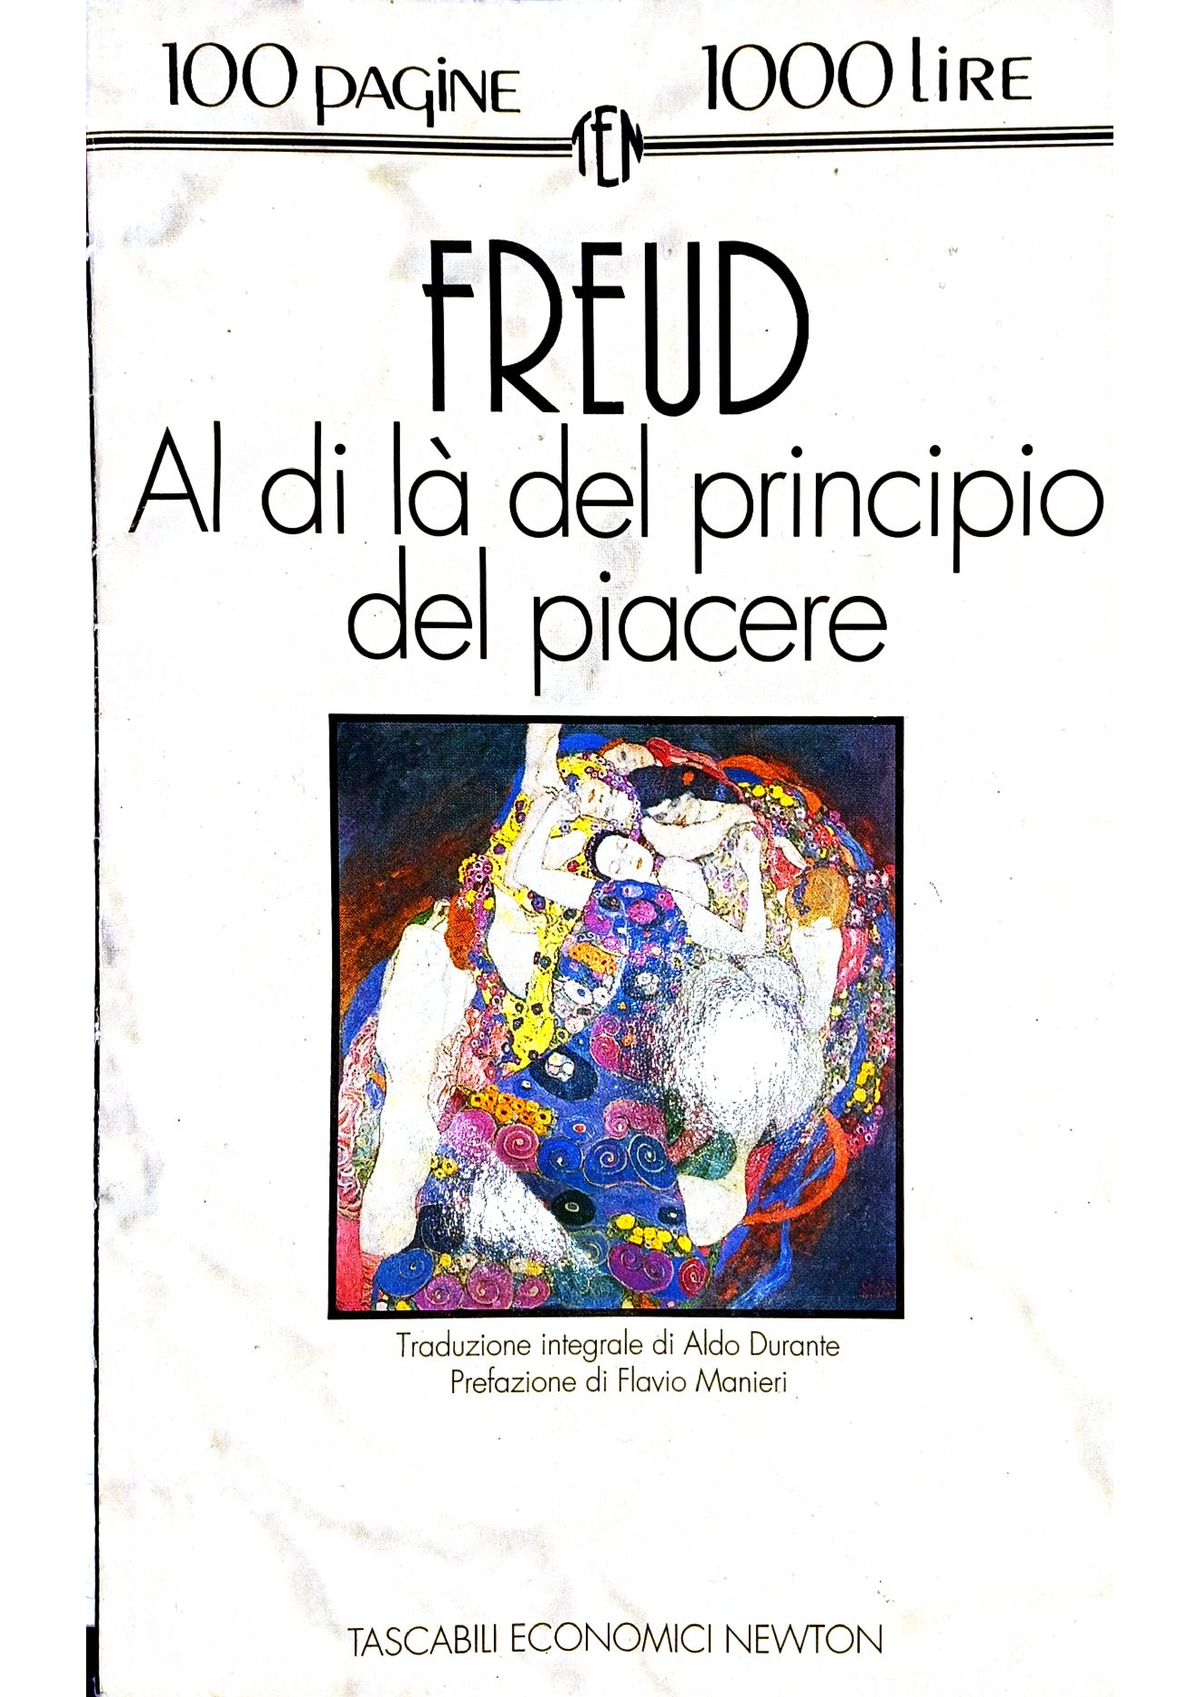 Al di là del principio di piacere Sigmund Freud Storia della Filosofia Studocu